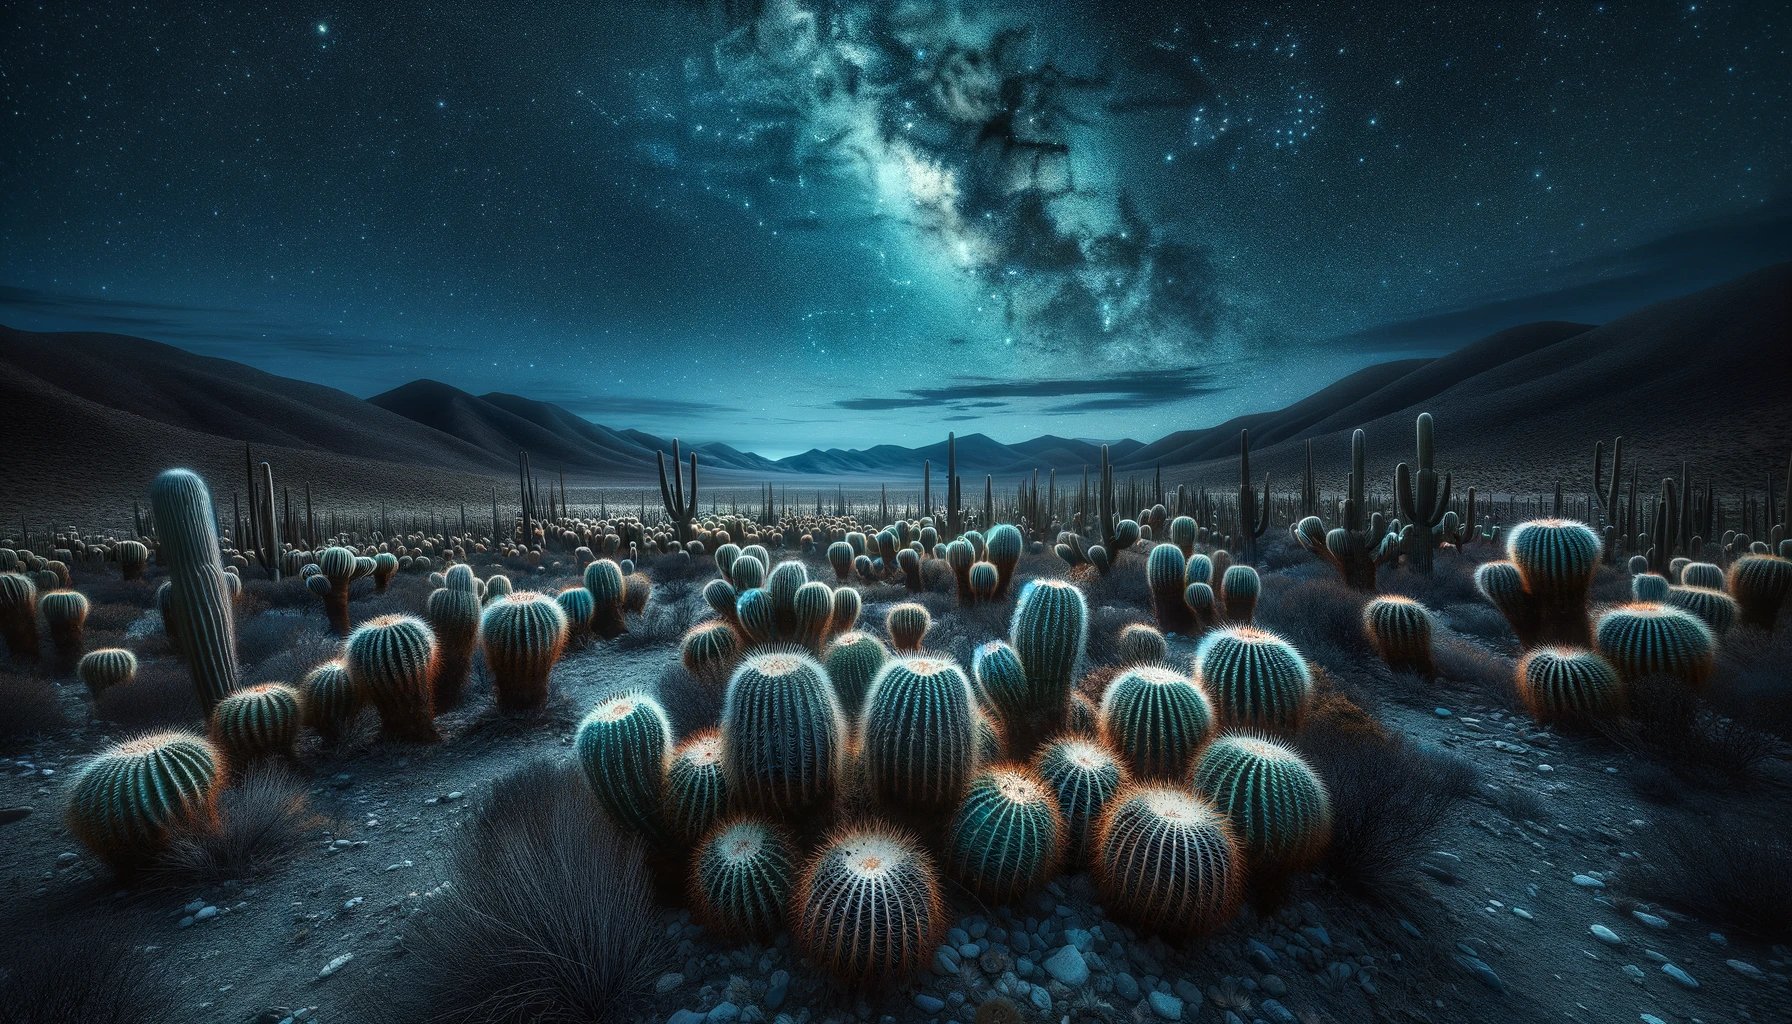 cactus de peyote en su hábitat natural